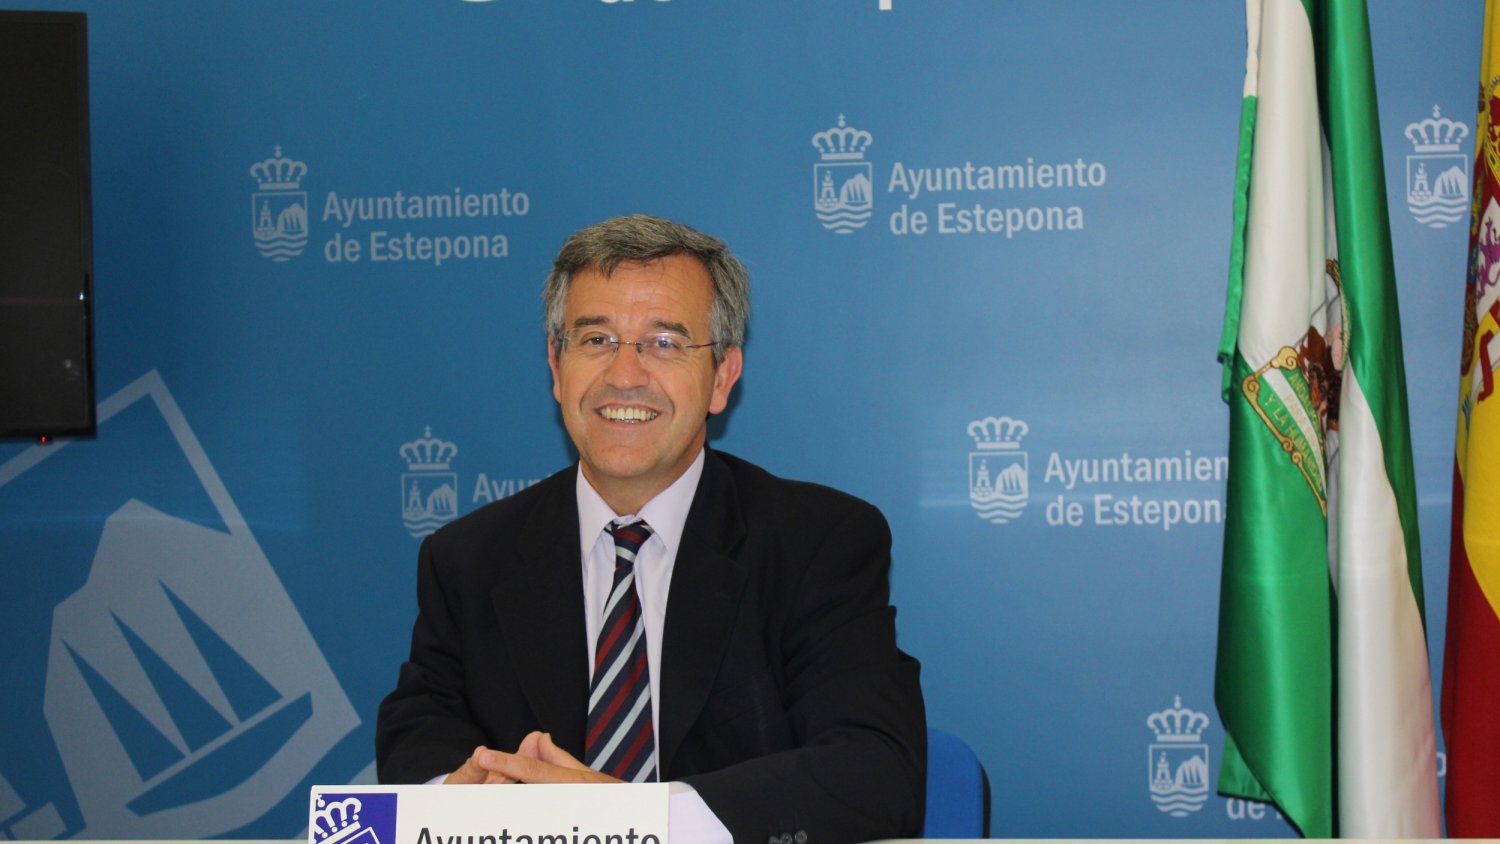 El alcalde asegura que “el gran avance” va a llegar con el hospital y la modernización de Estepona